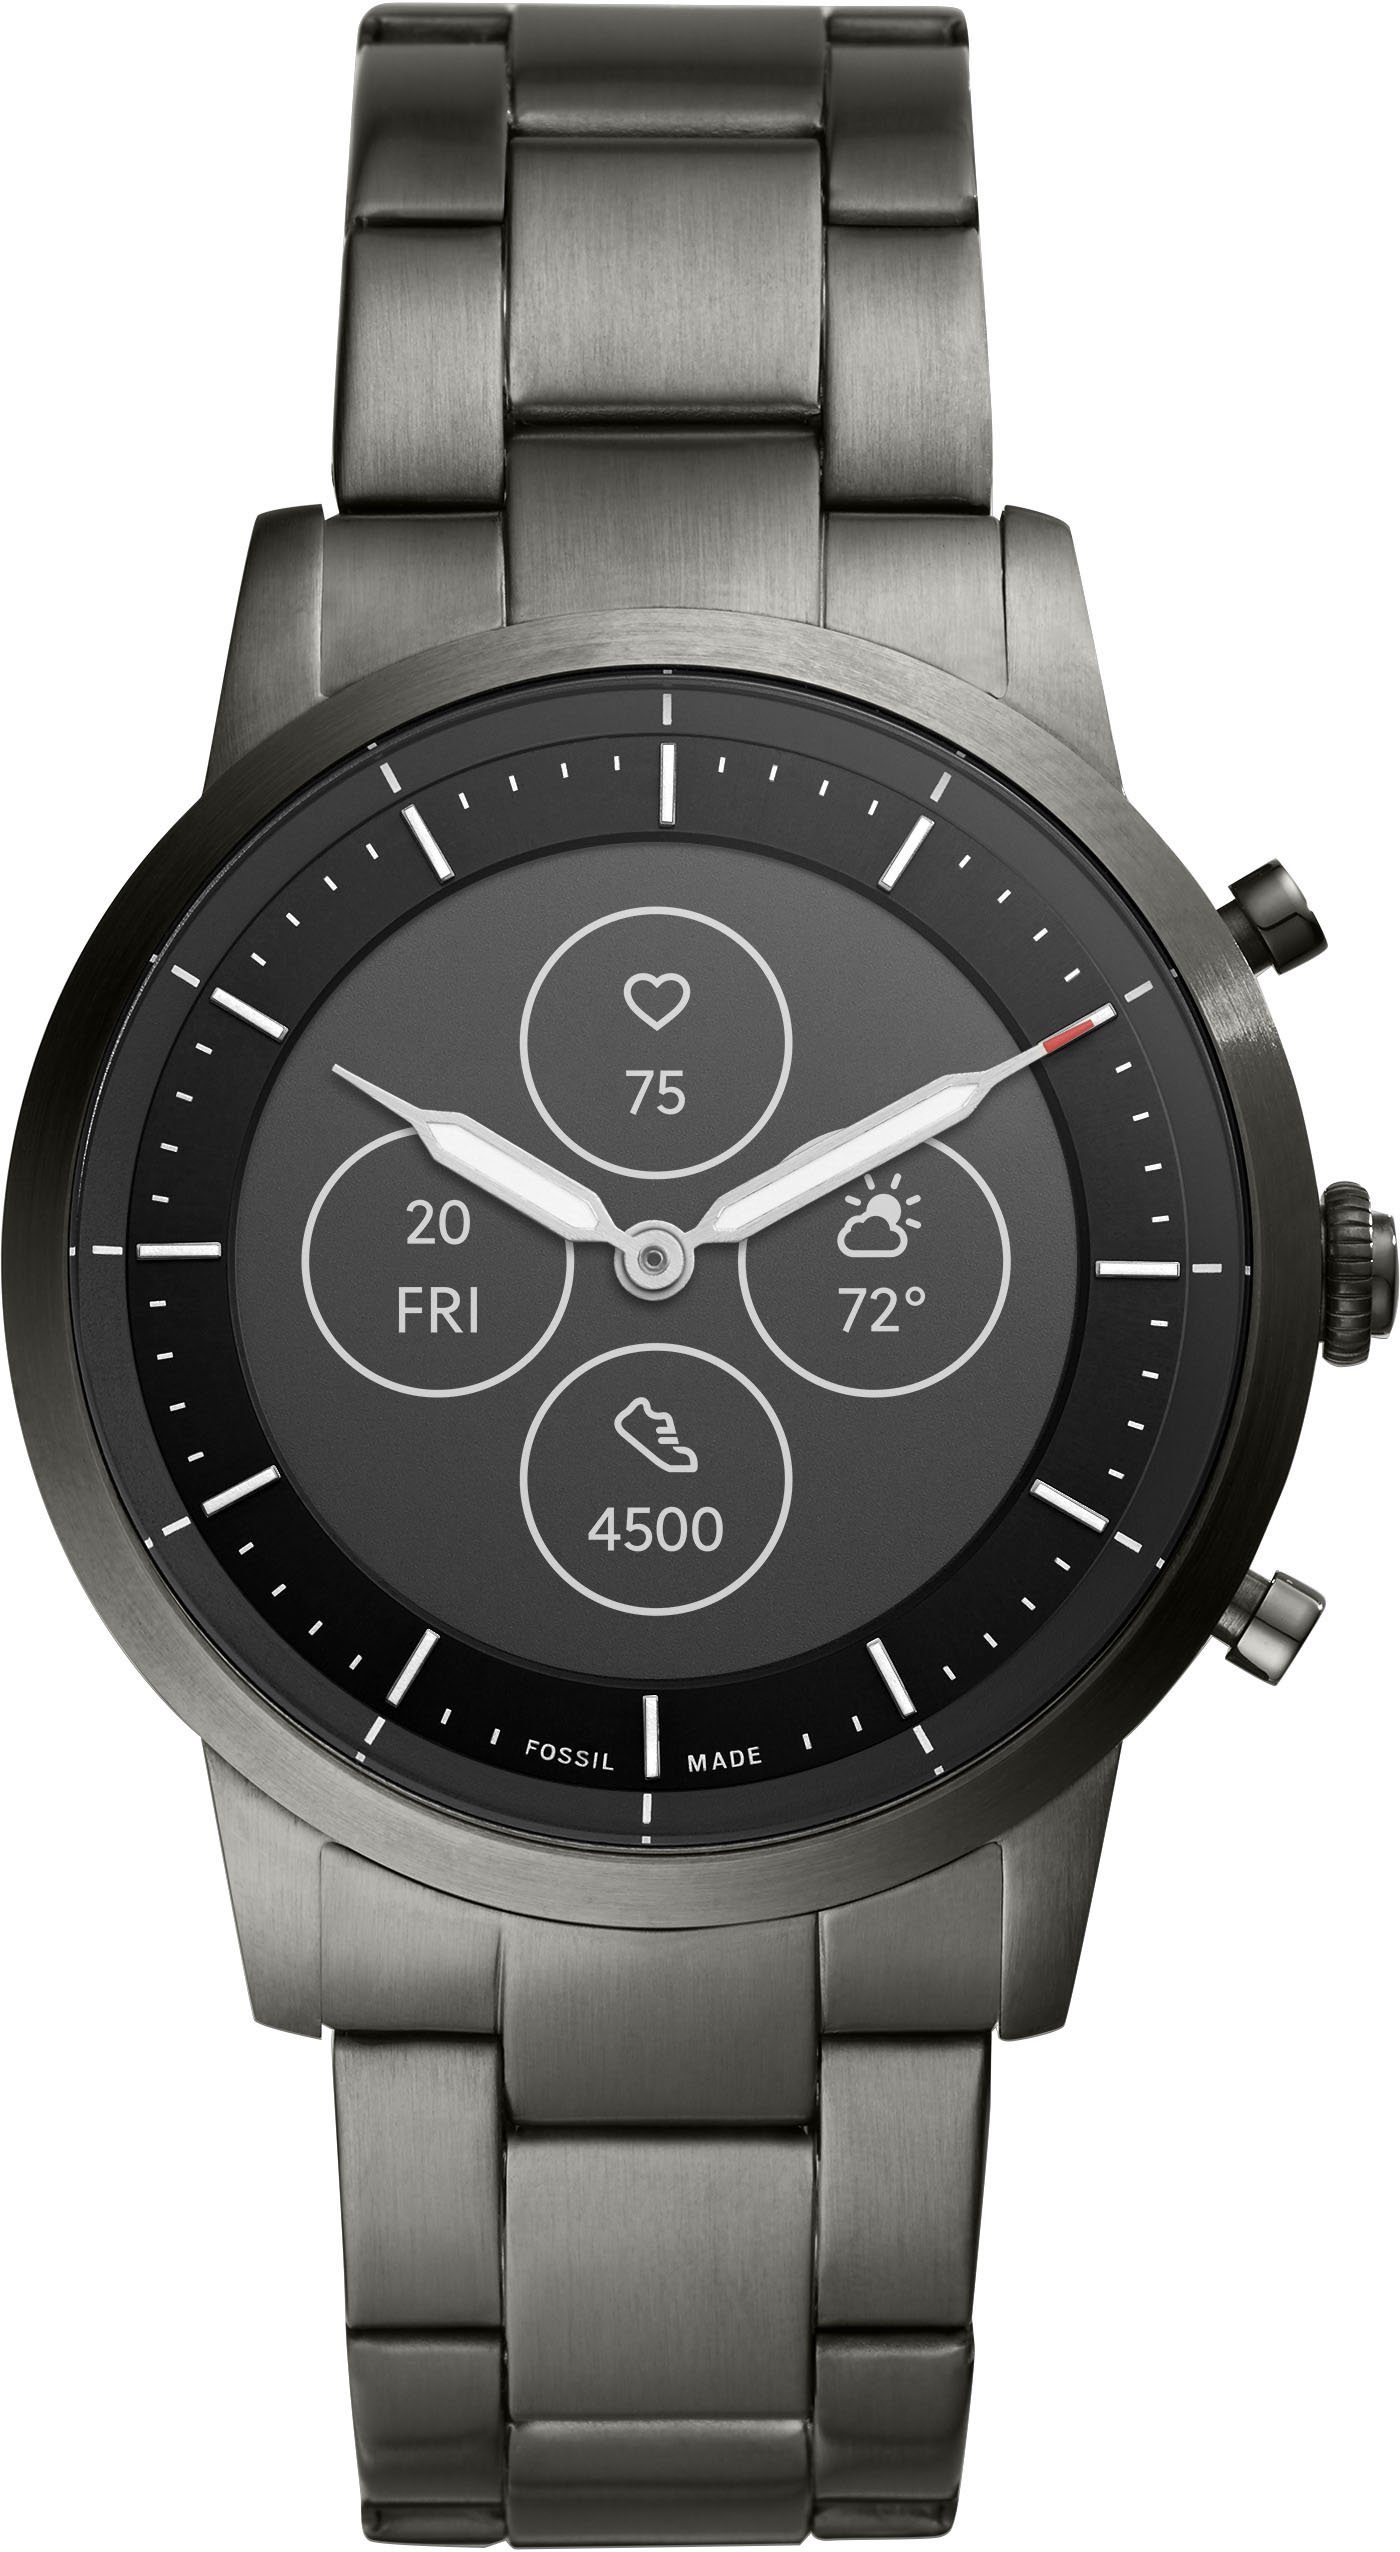 hybrid smartwatch คือ watches